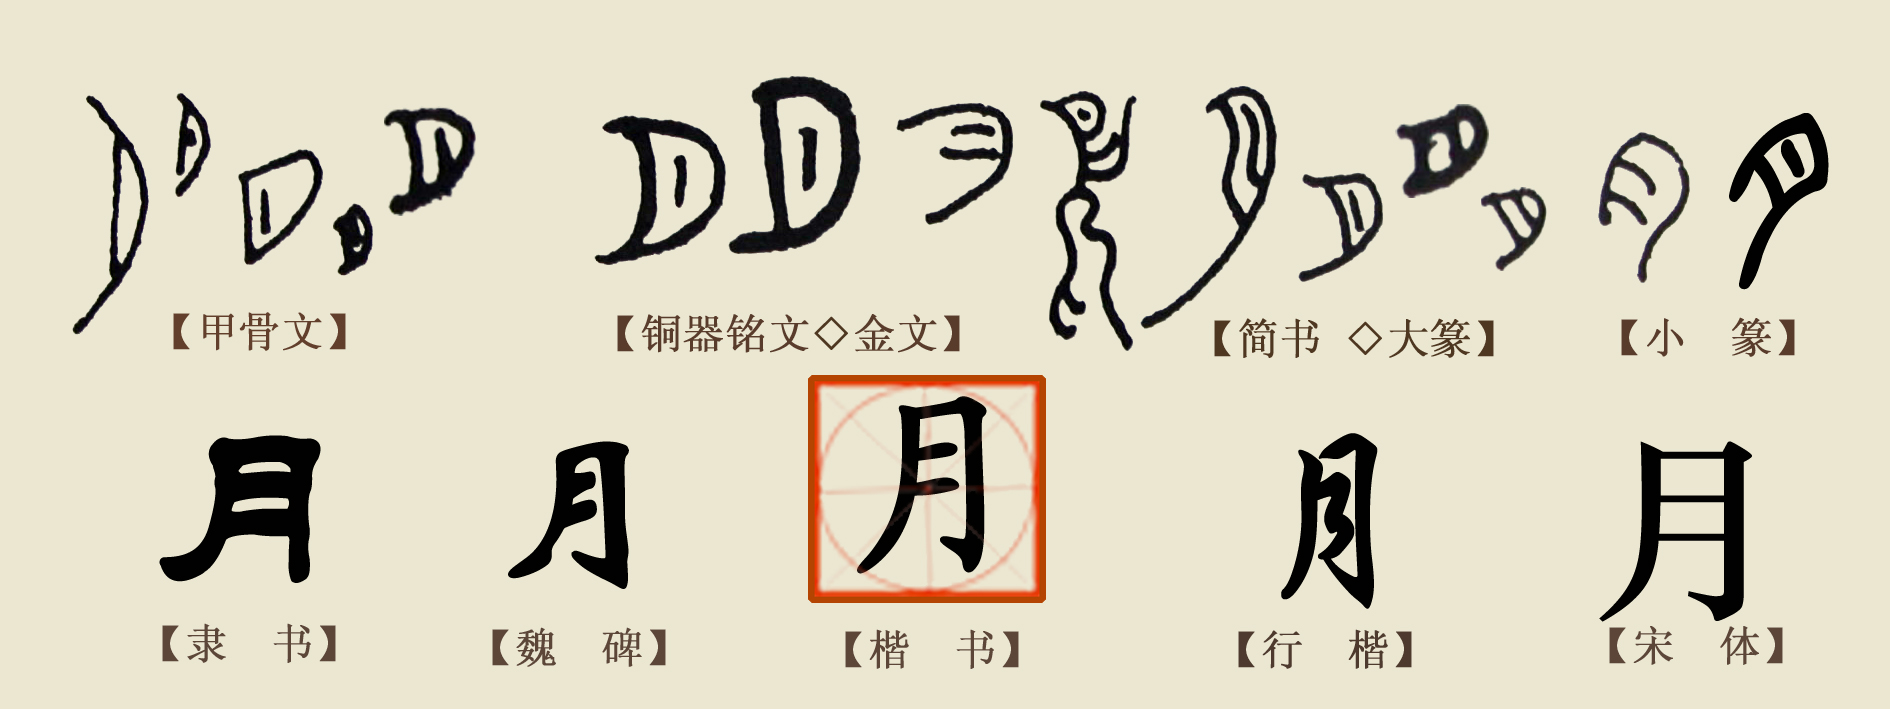 伏羲氏的八卦图，其实是汉字的鼻祖